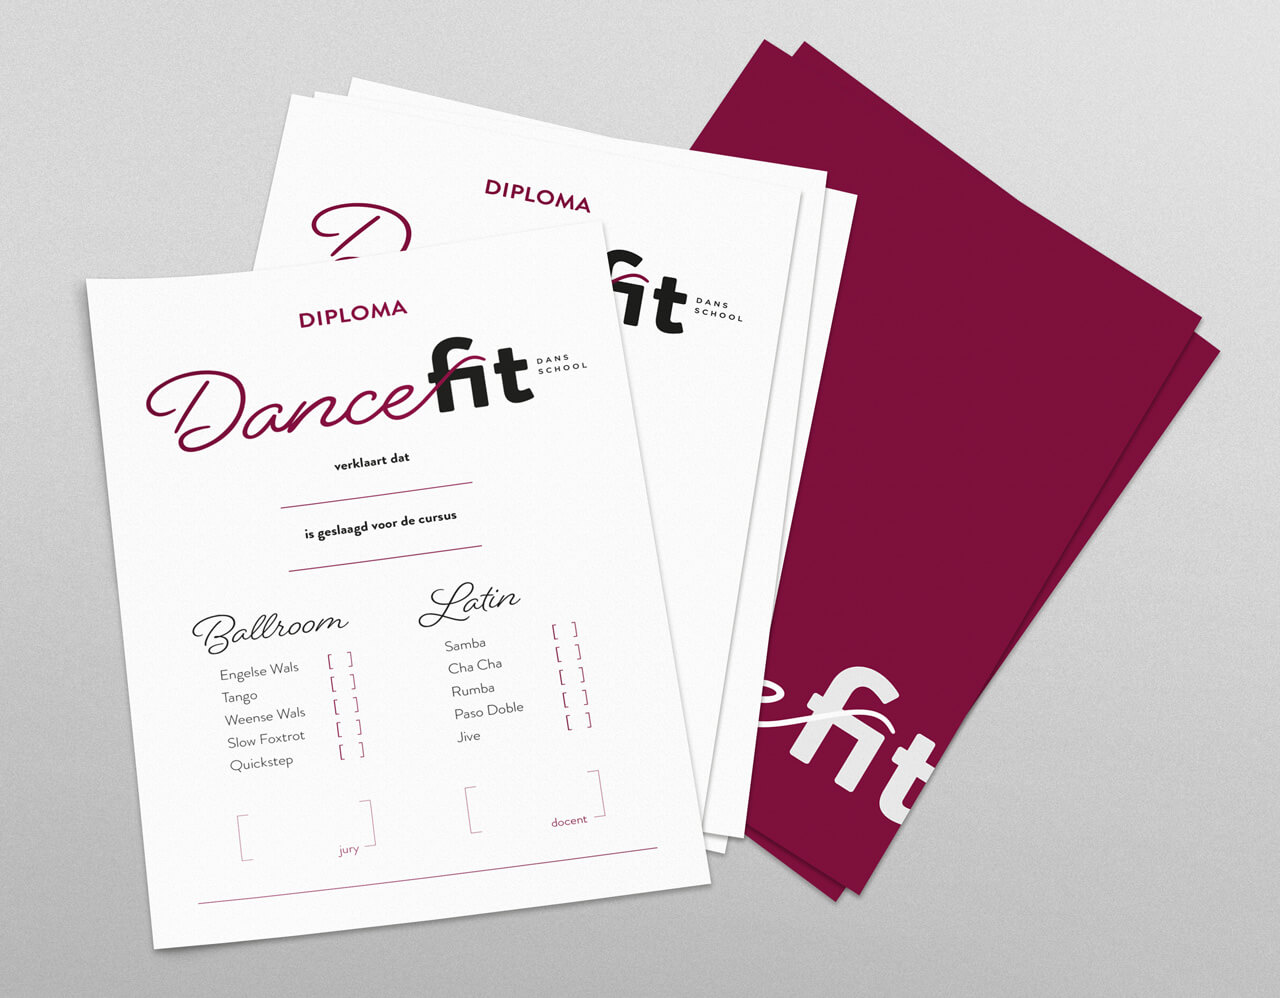 Diploma DanceFit